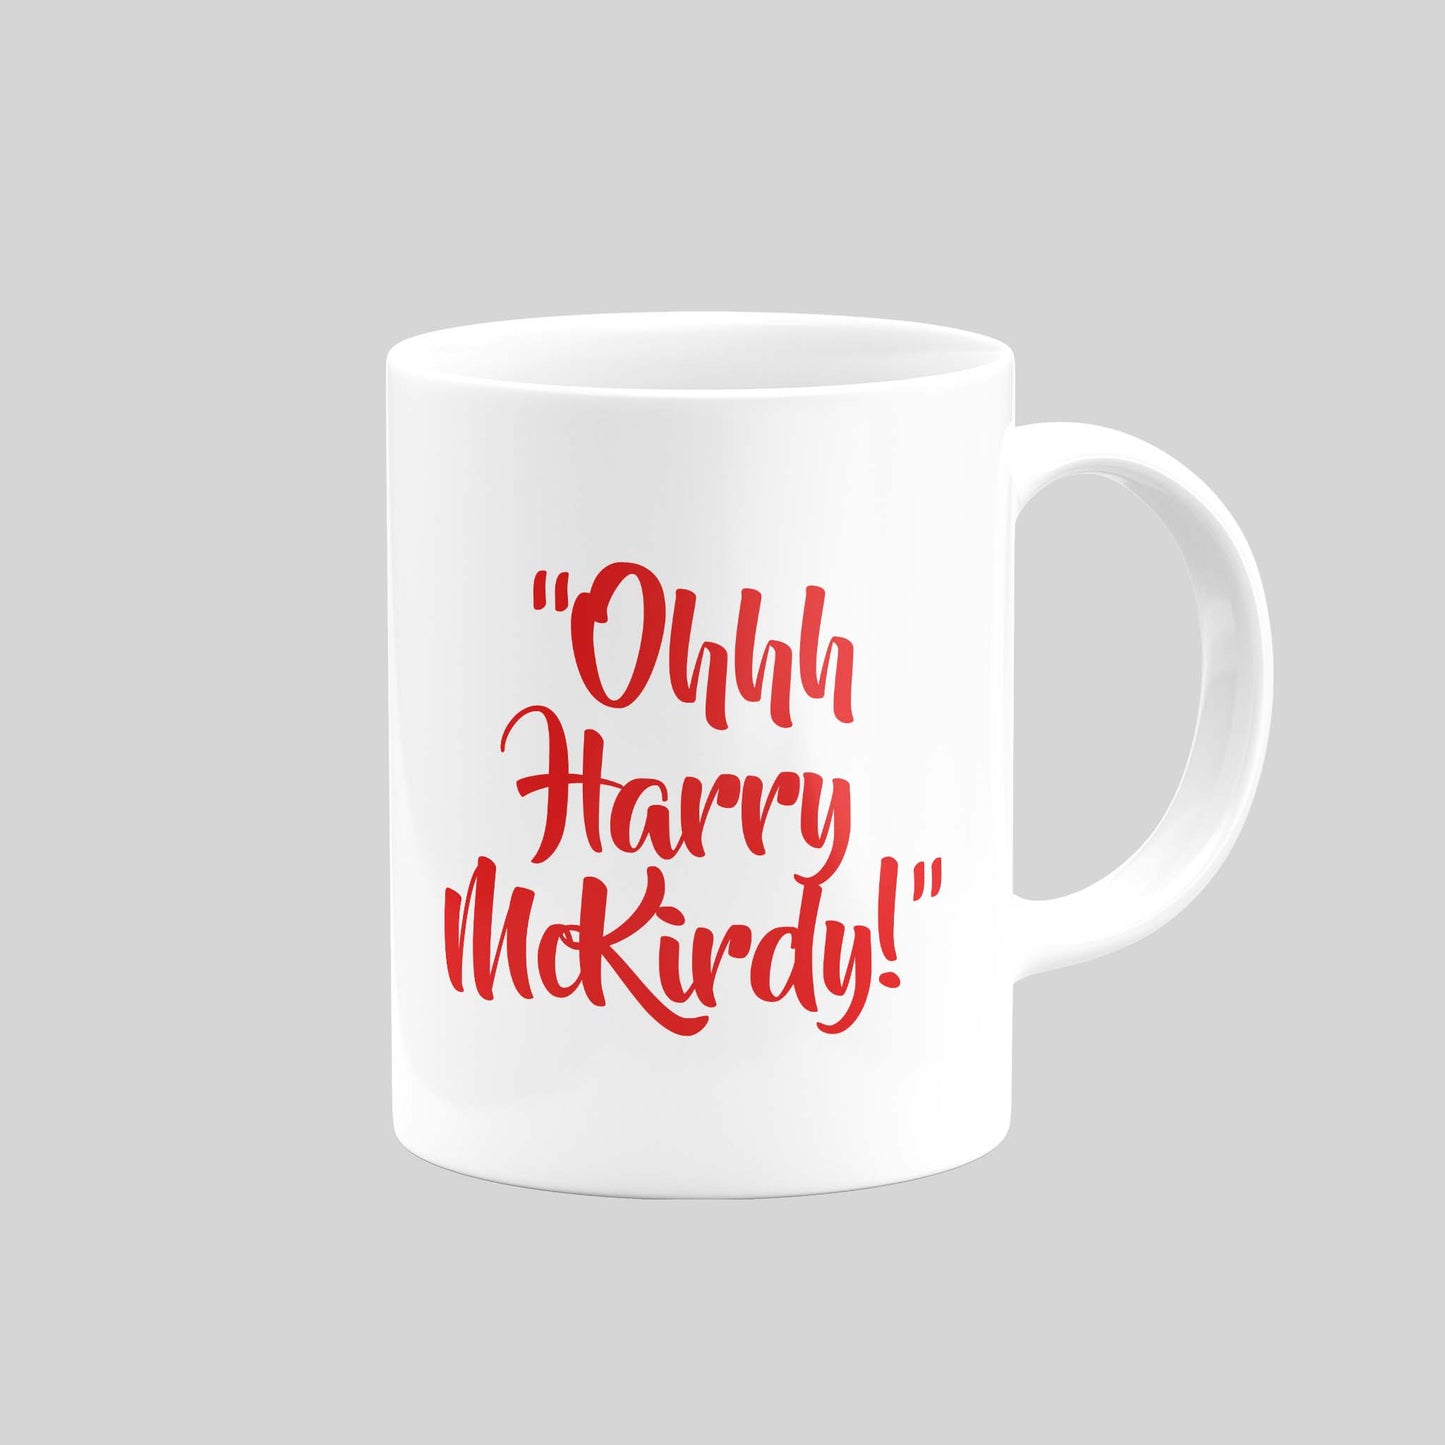 Harry McKirdy Mug